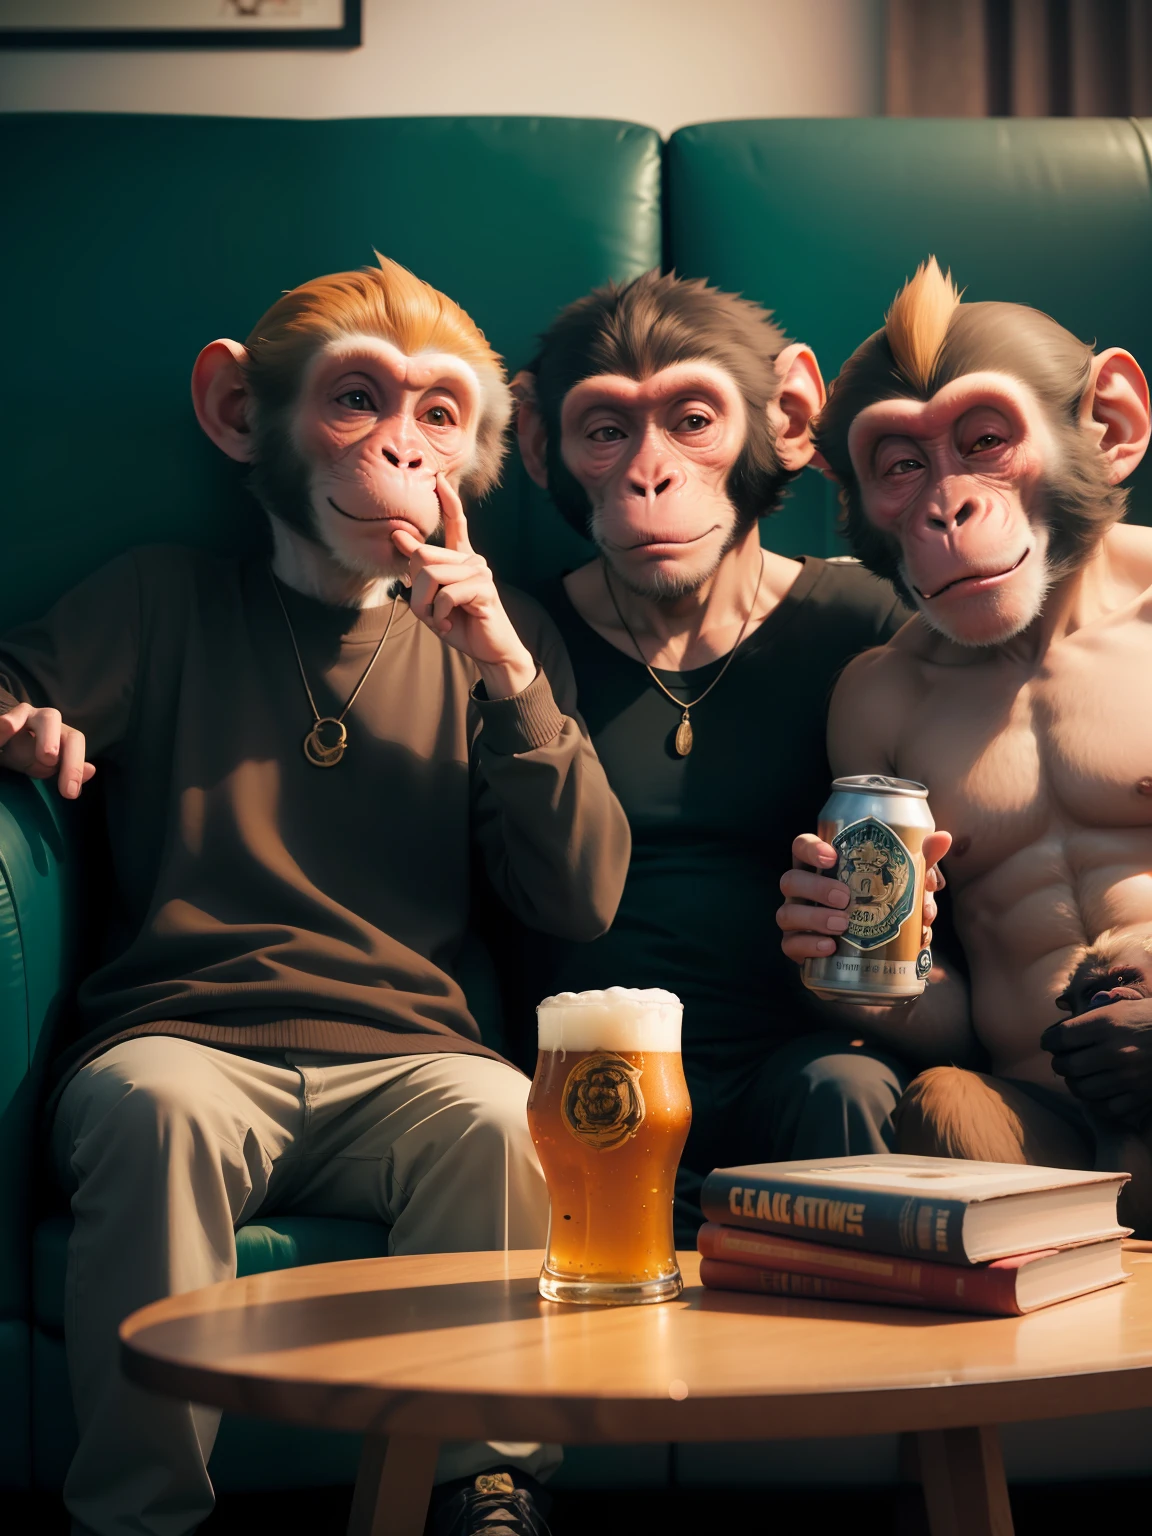 ลิงสองตัวนั่งอยู่บนโซฟา, ลิง 1 ตัวดื่มเบียร์หนึ่งกระป๋อง และลิง 1 ตัวโชว์นิ้วกลางให้กล้อง